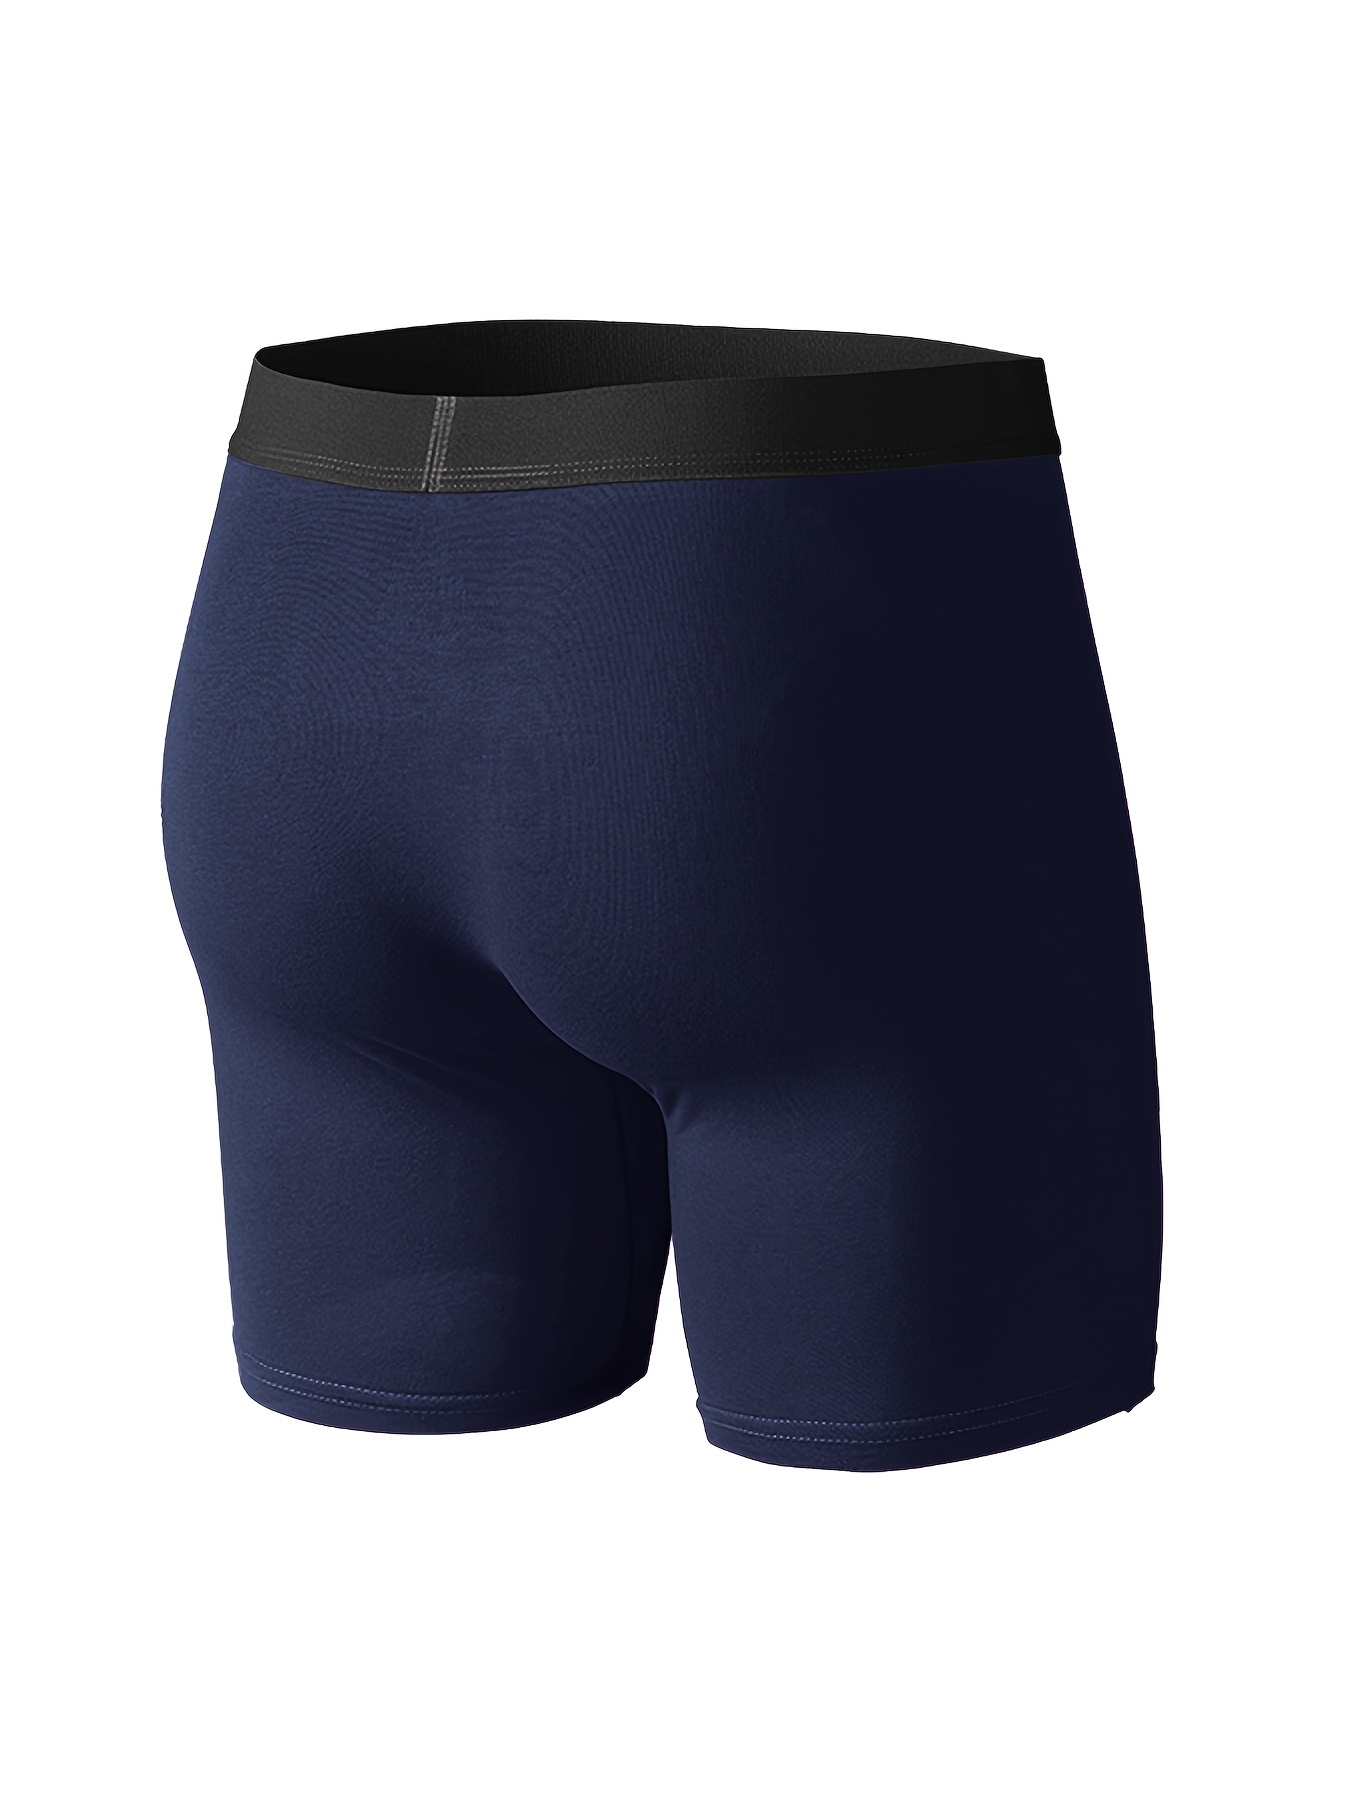 5pcs Men's Cotton Boxer Briefs Fashion, Long Leg Sexy Solid Color Boxer  Breathable Men's Simple Causal Underwear Panties Short